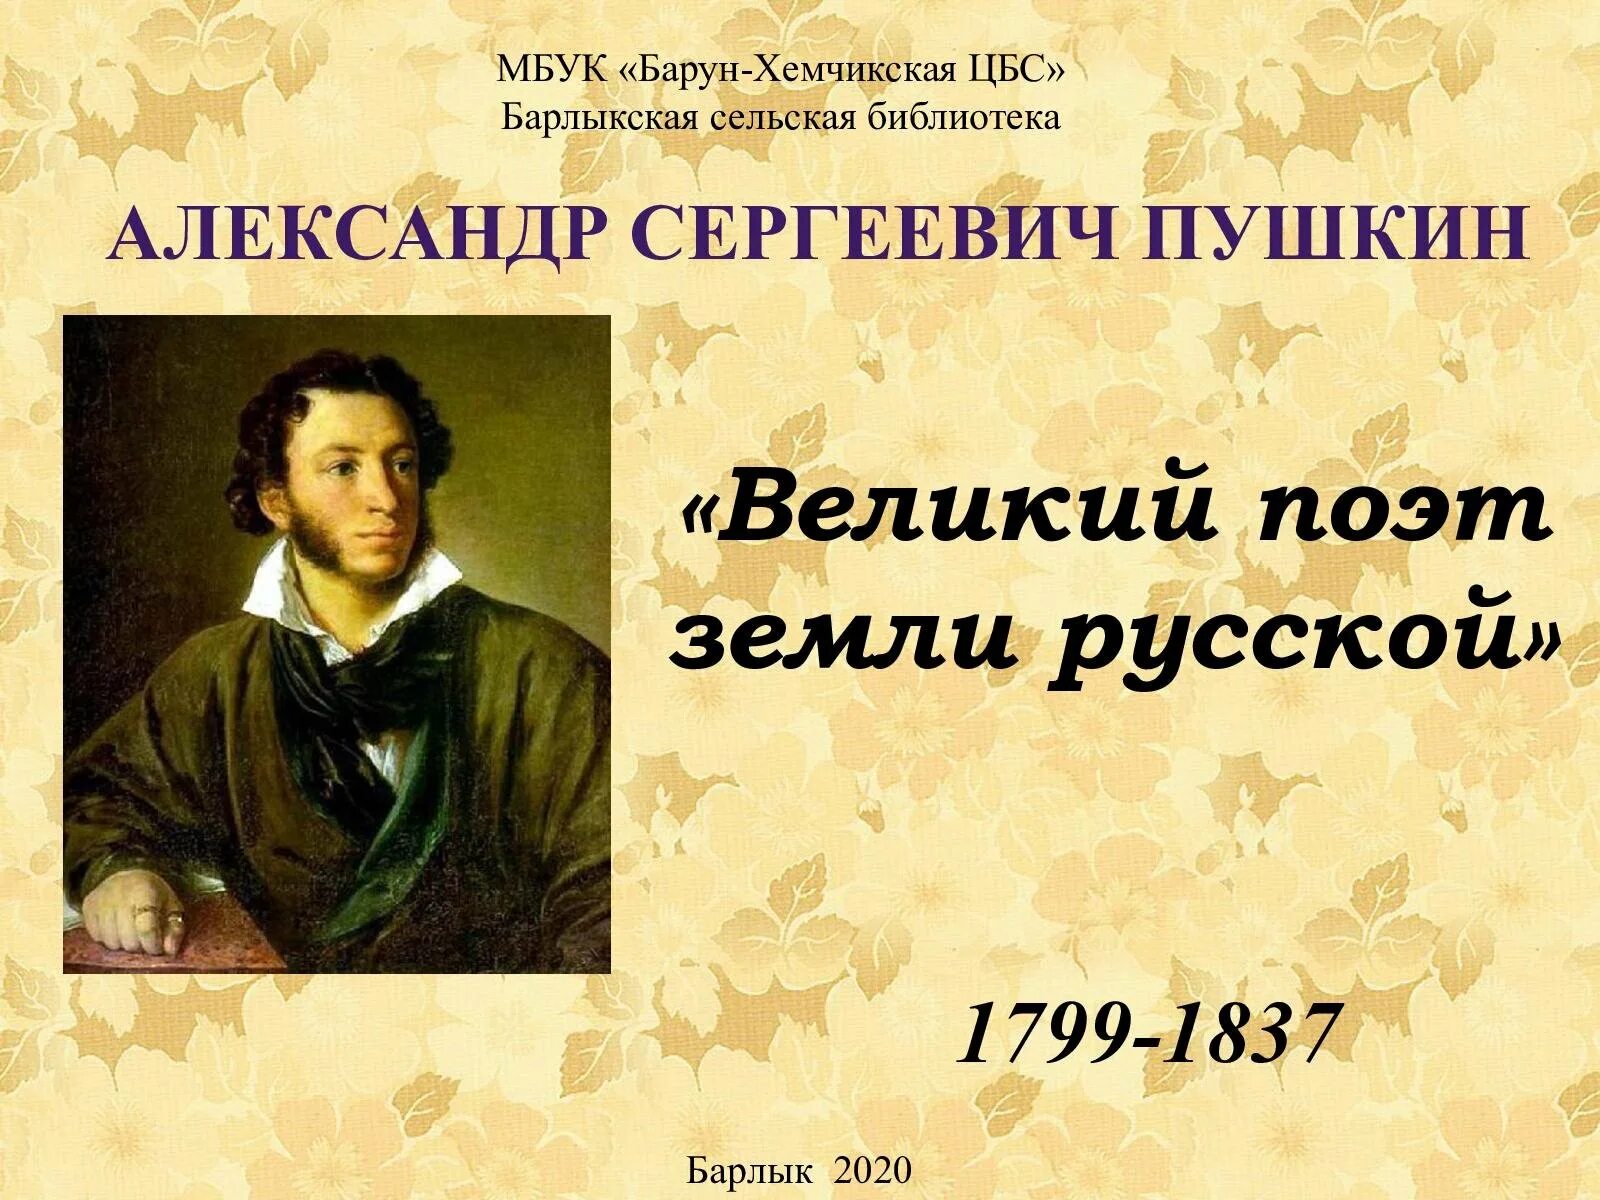 6 Июня день рождения Пушкина. 6 Июня день рождения Пушкина Пушкинский день. Мероприятия 225 лет со дня рождения пушкина